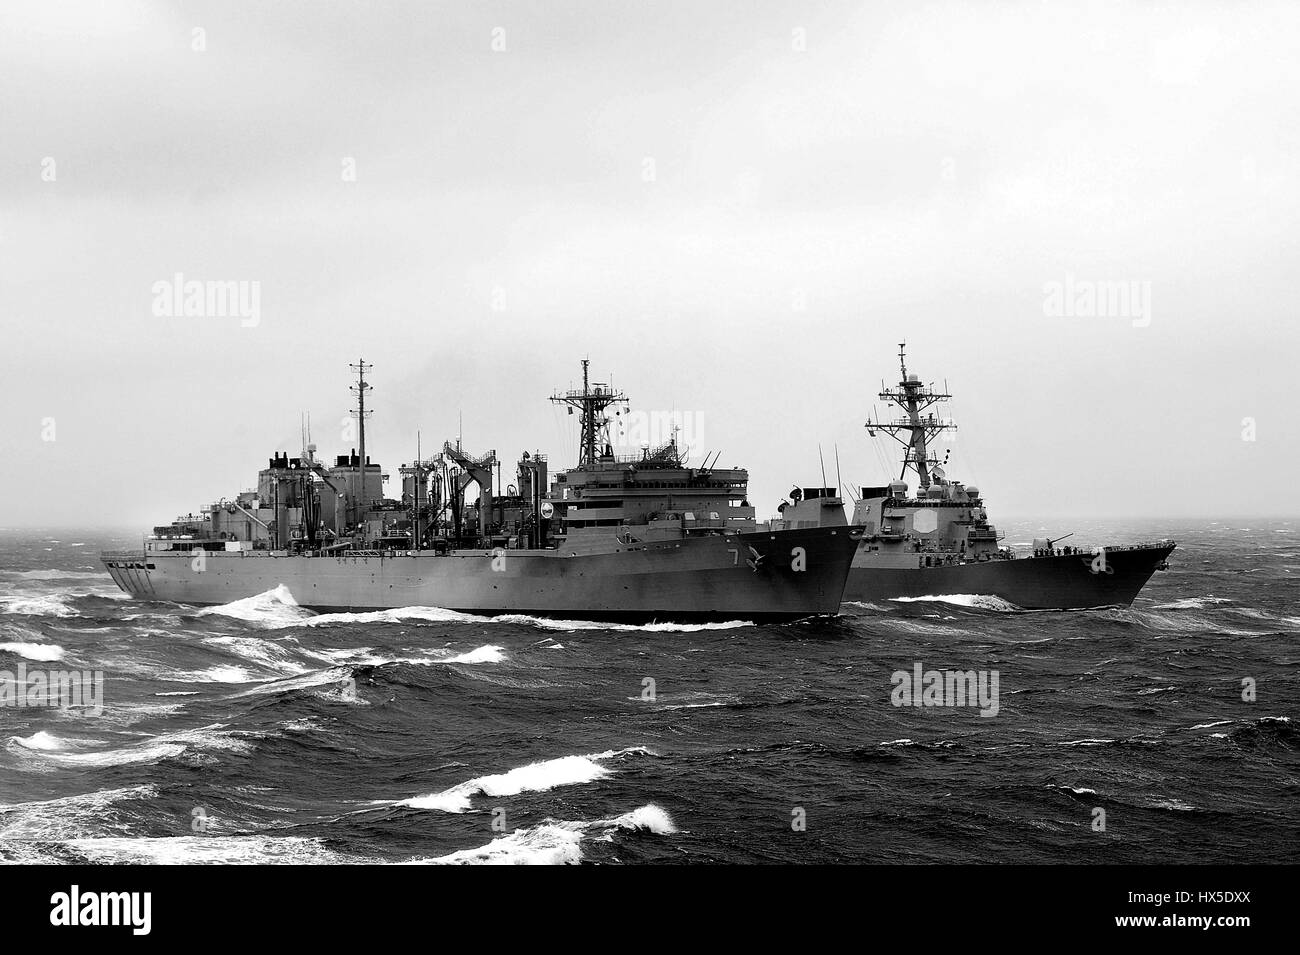 Comando de Transporte Marítimo Militar de apoyo de combate rápido buque USNS Rainier (T-AOE-7) y Arleigh Burke clase de misiles guiados destructor USS John S. McCain (DDG 56) durante una reposición en alta mar, al oeste de la Península de Corea, en 2013. Imagen cortesía de Declan Barnes/US Navy. Foto de stock